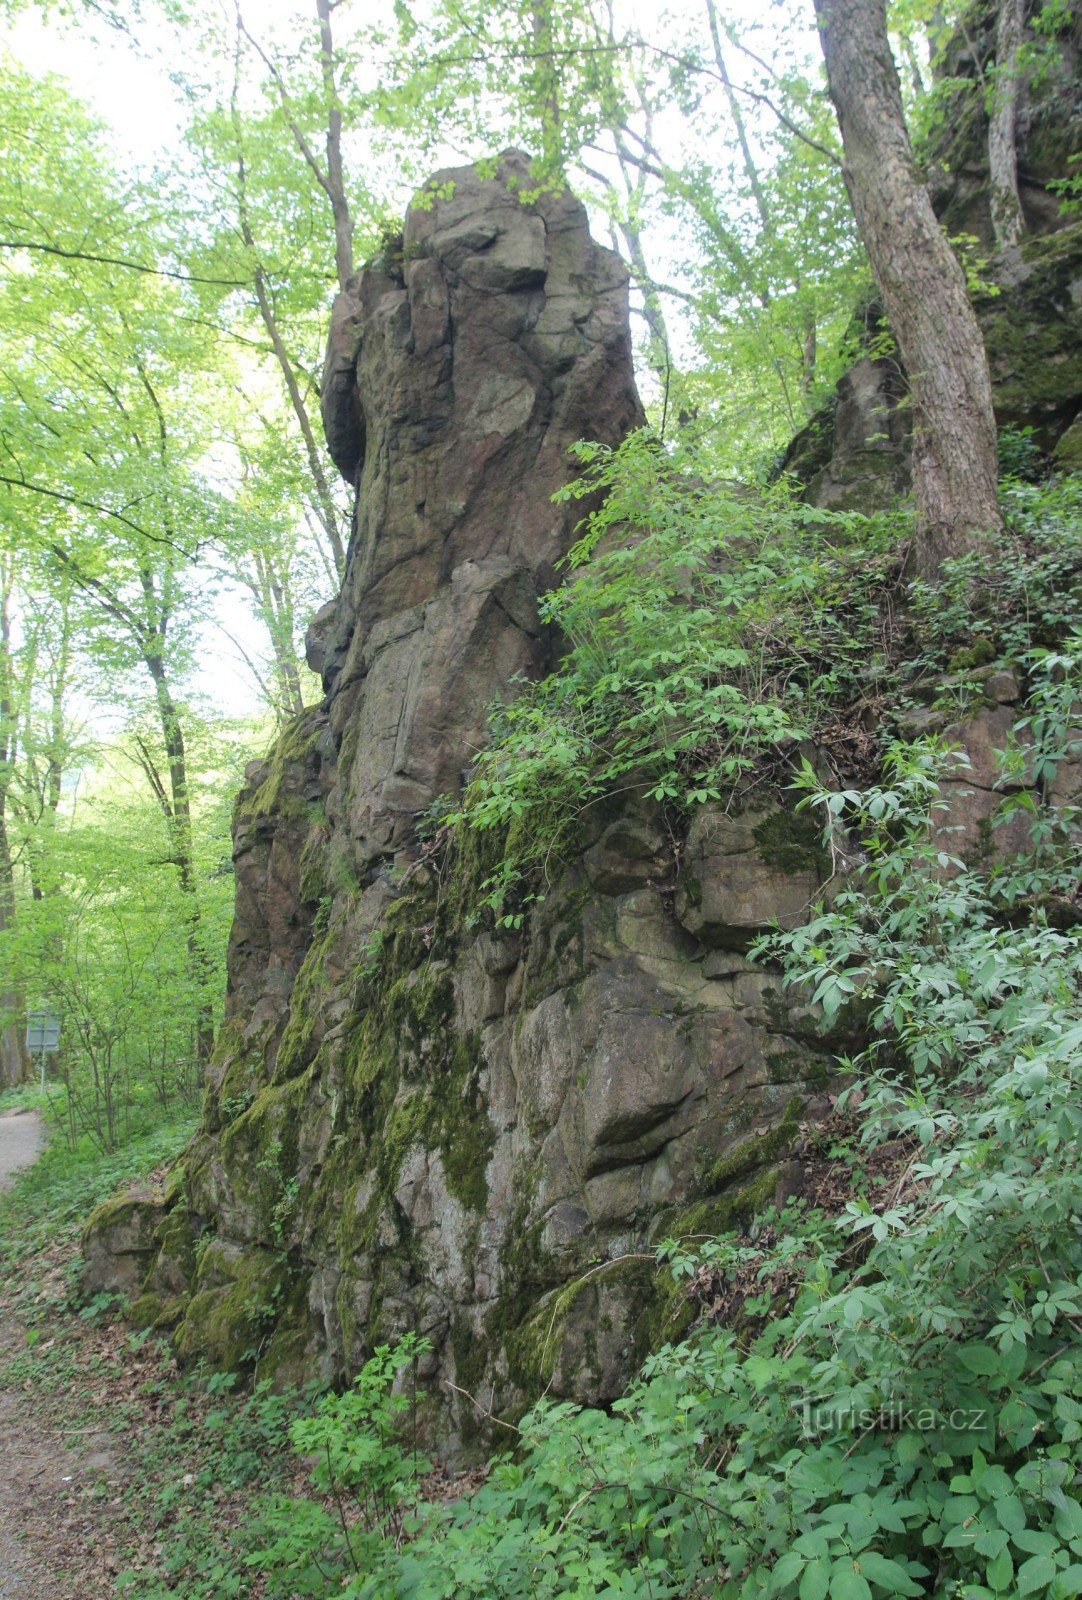 Sfinxens klippeformation om foråret